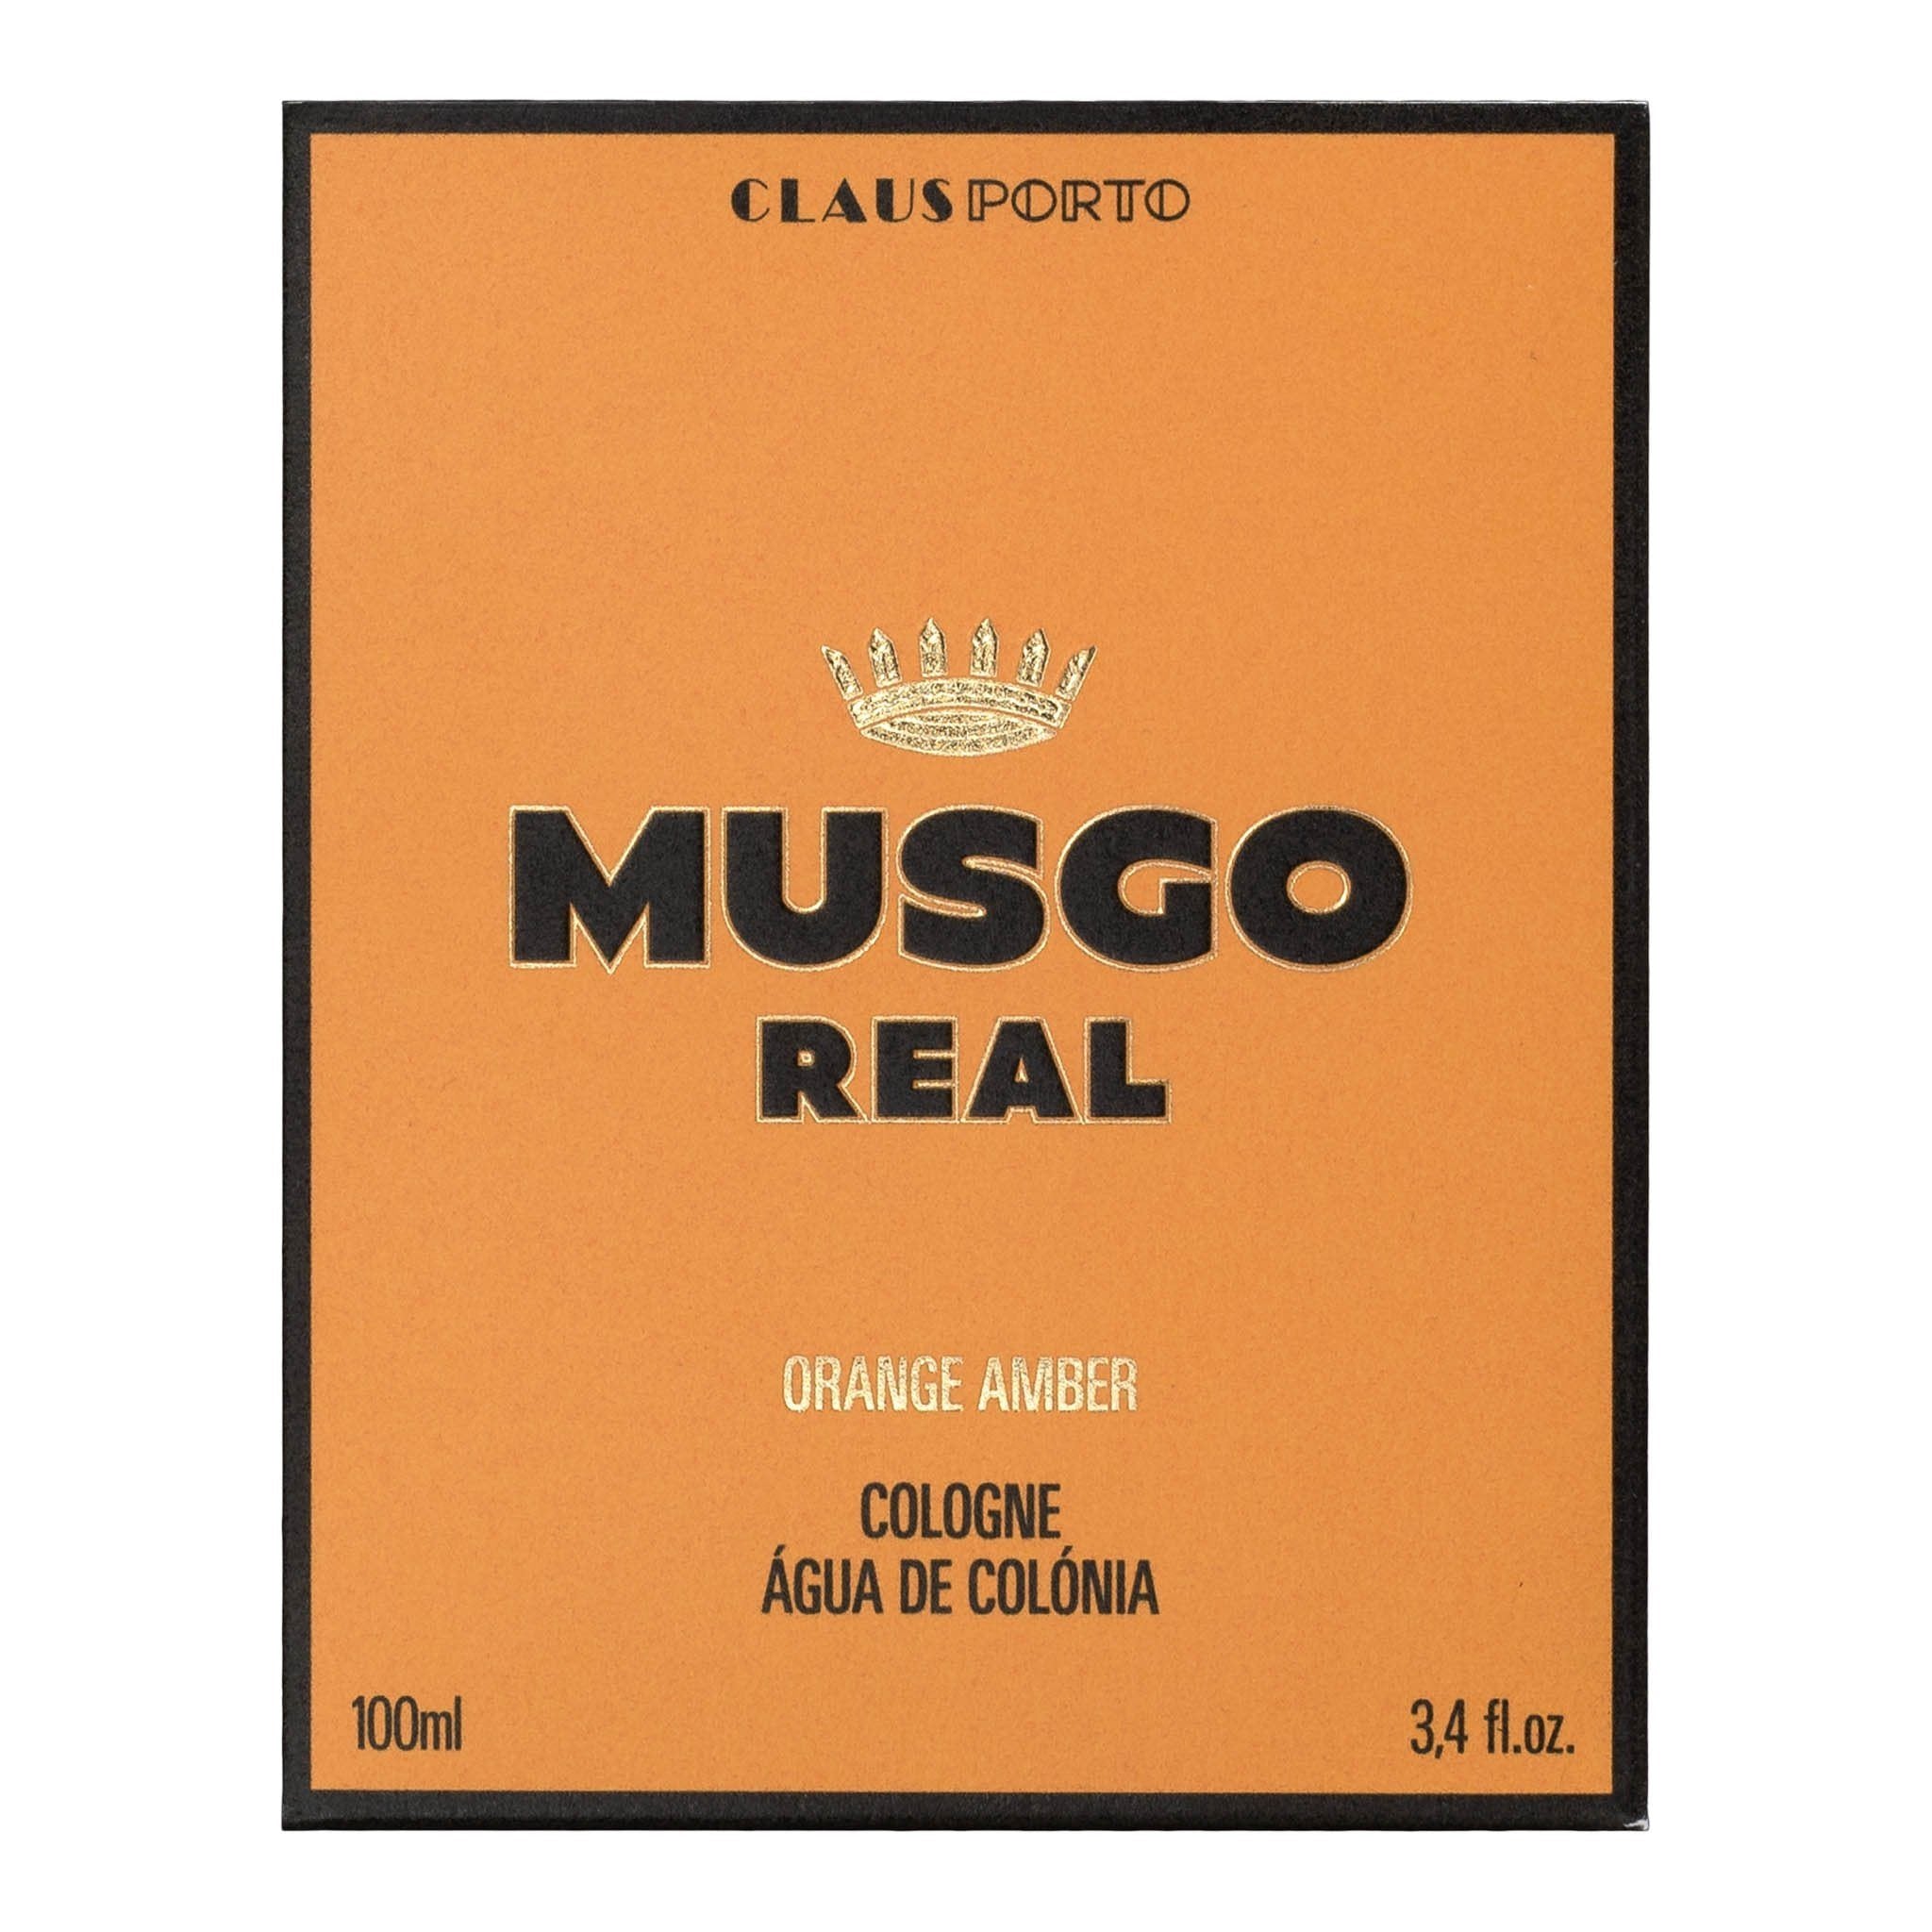 Musgo Real Eau de Cologne Orange Amber